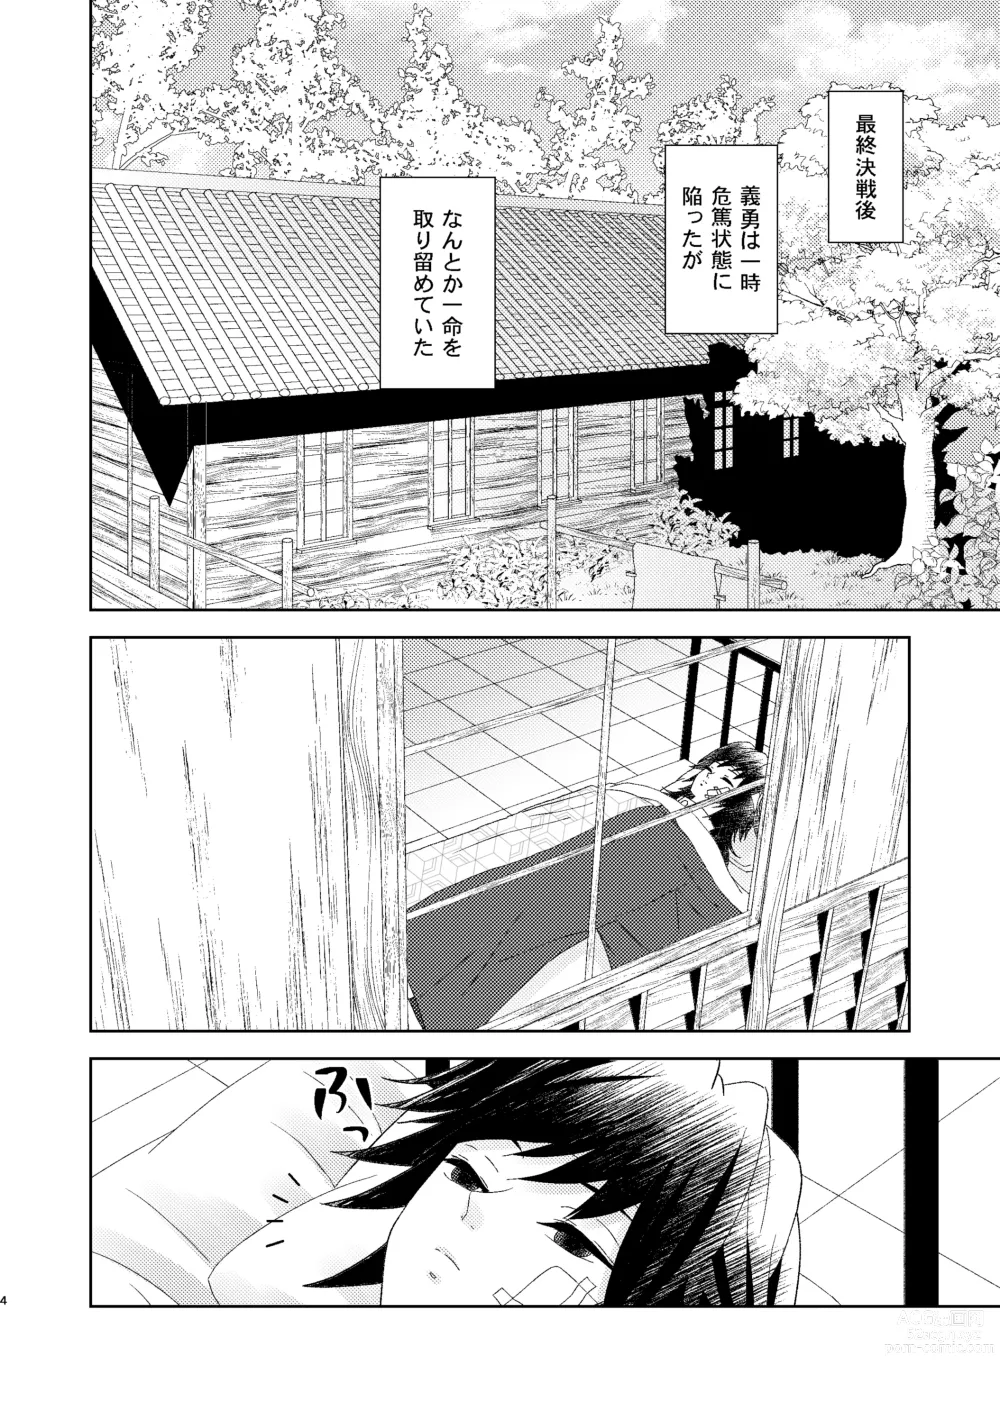 Page 3 of doujinshi Yuurei Kareshi no Koiwazurai